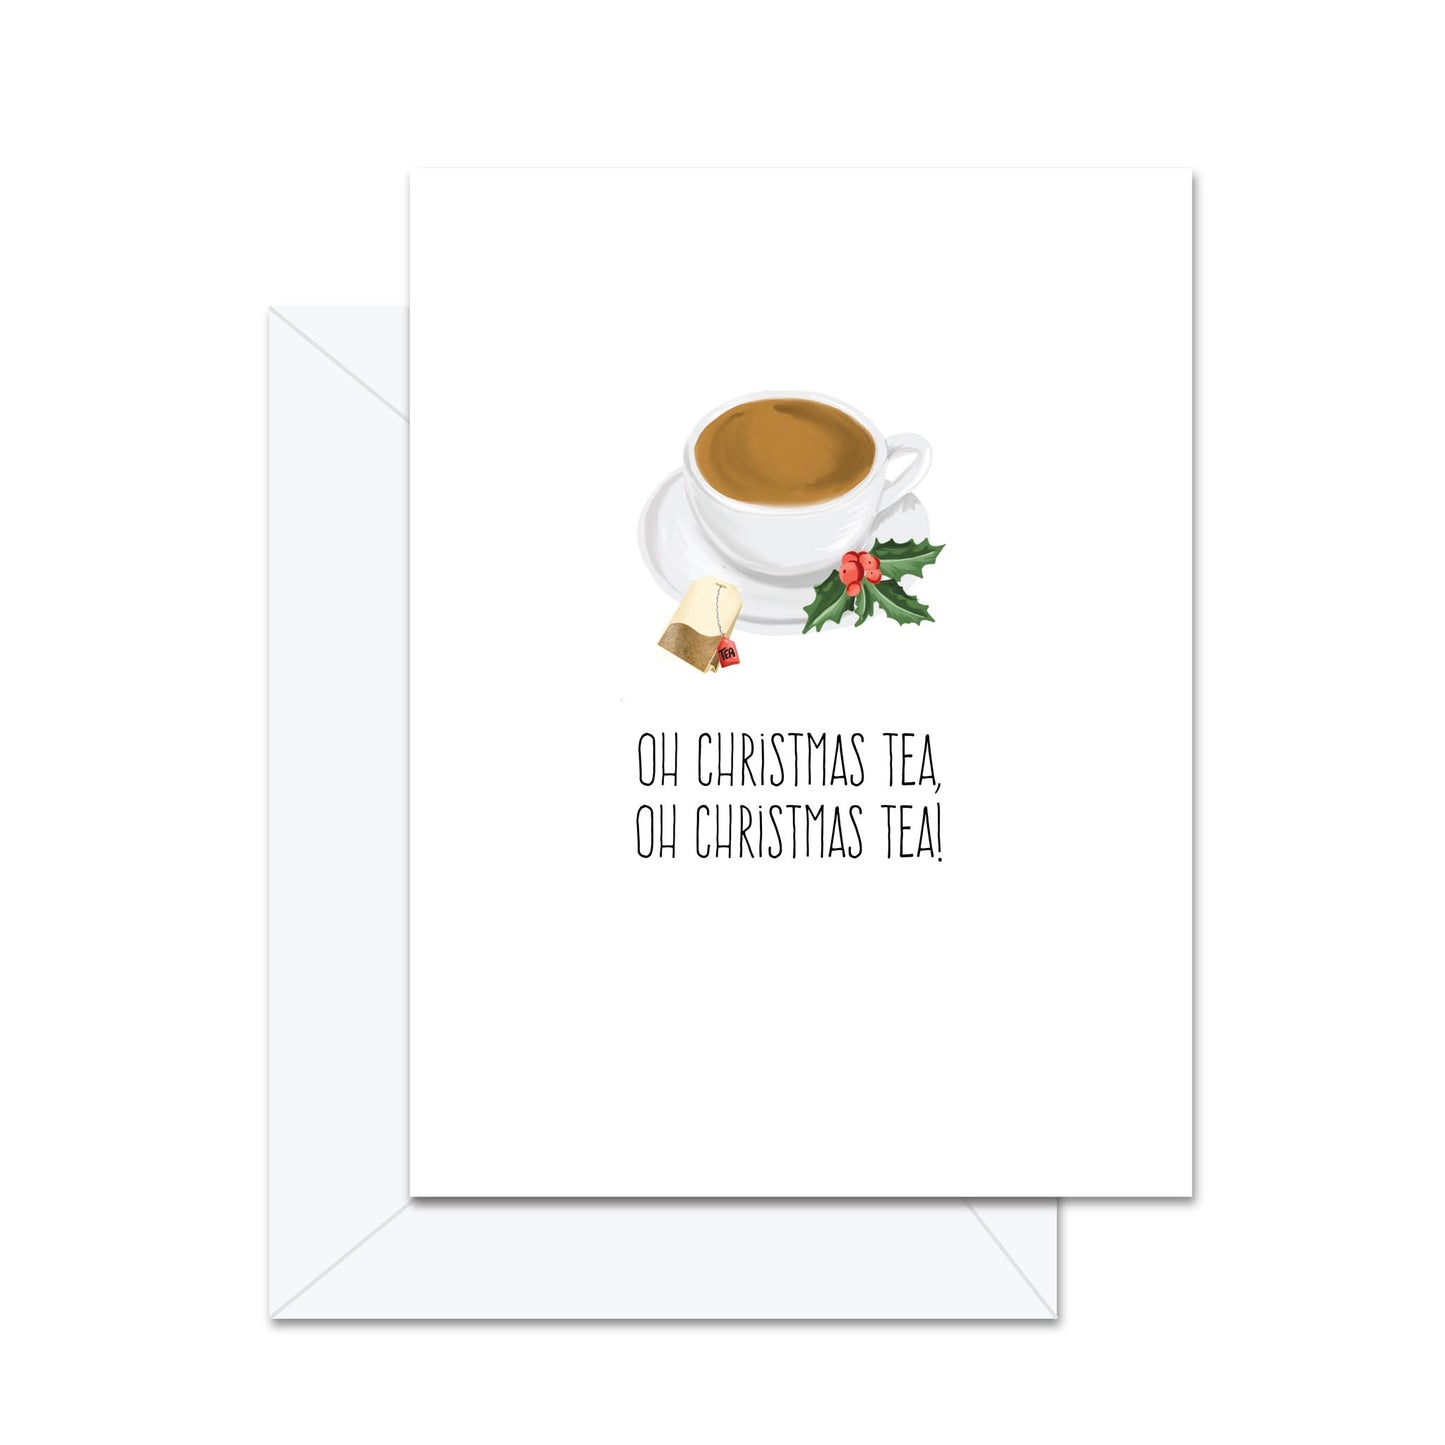 Oh Christmas Tea, Oh Christmas Tea - Greeting Card